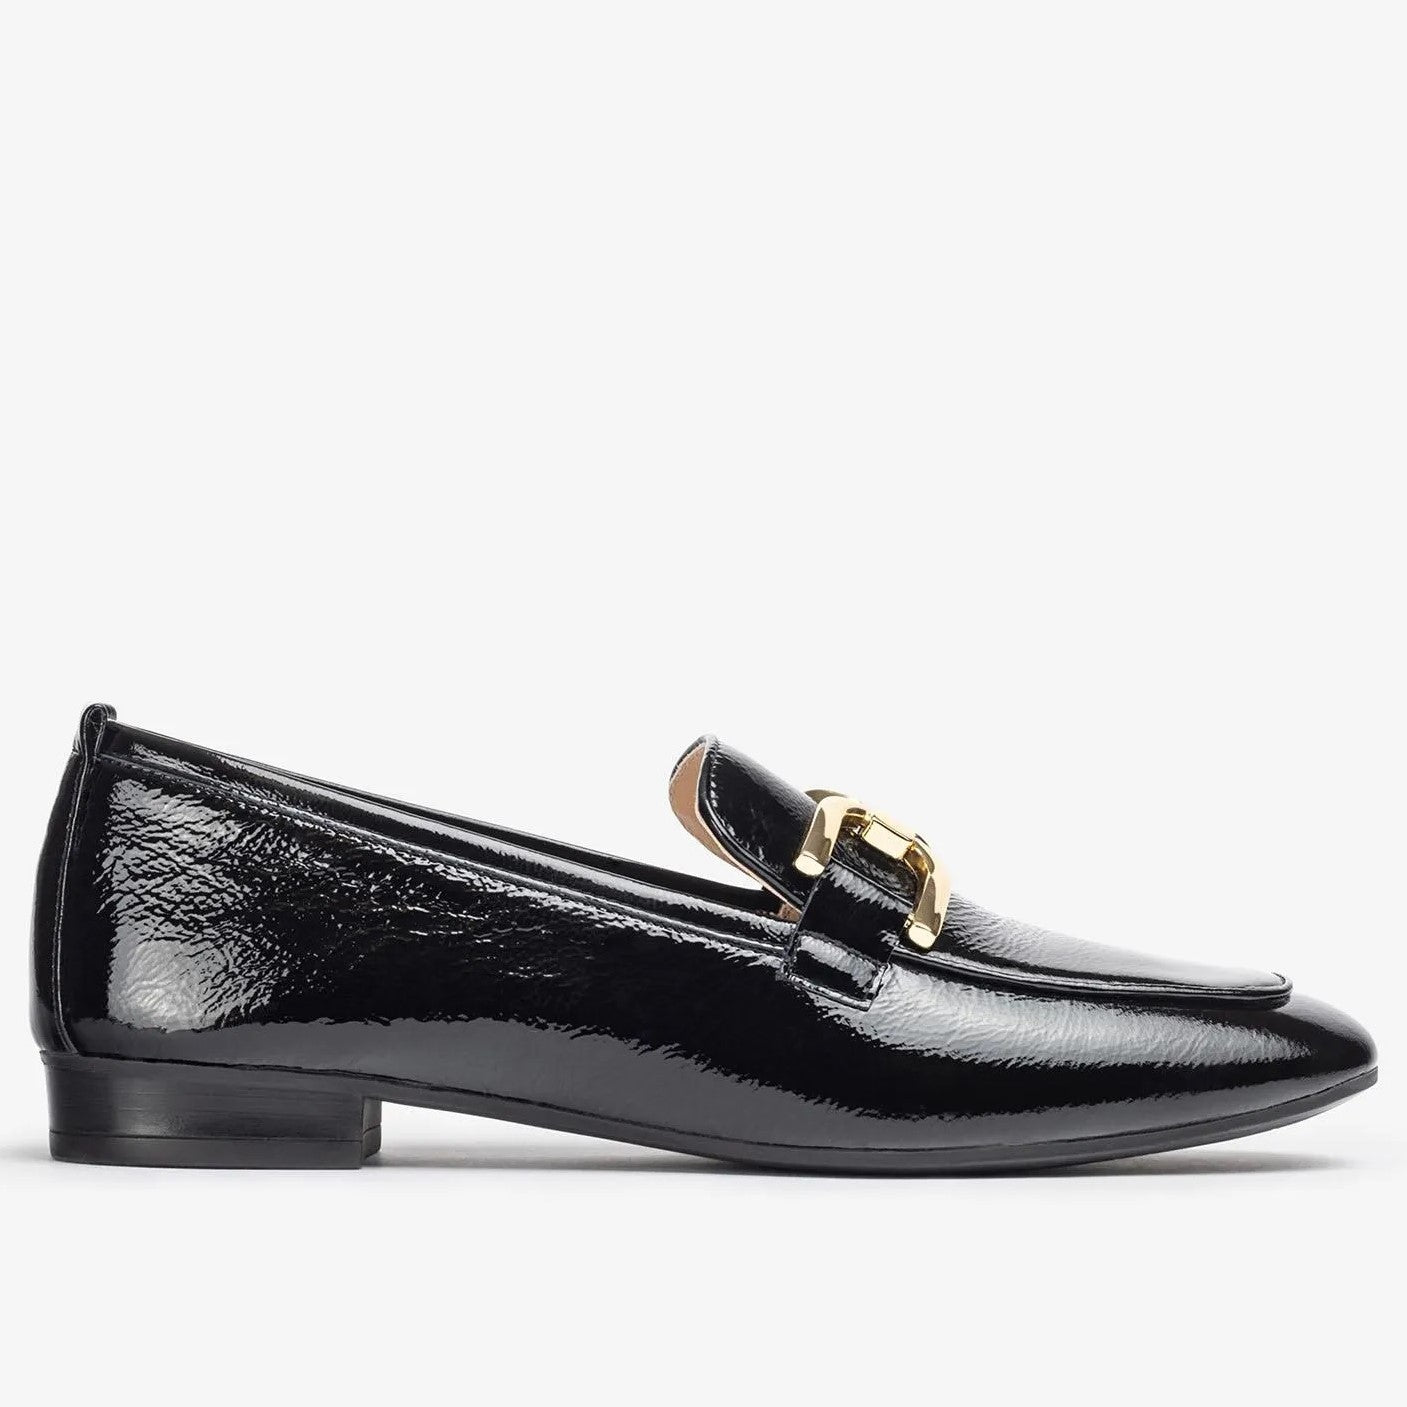 Unisa Baxter Loafer-BLACK PATENT – O'Flynns Footwear Shop Shoes Online